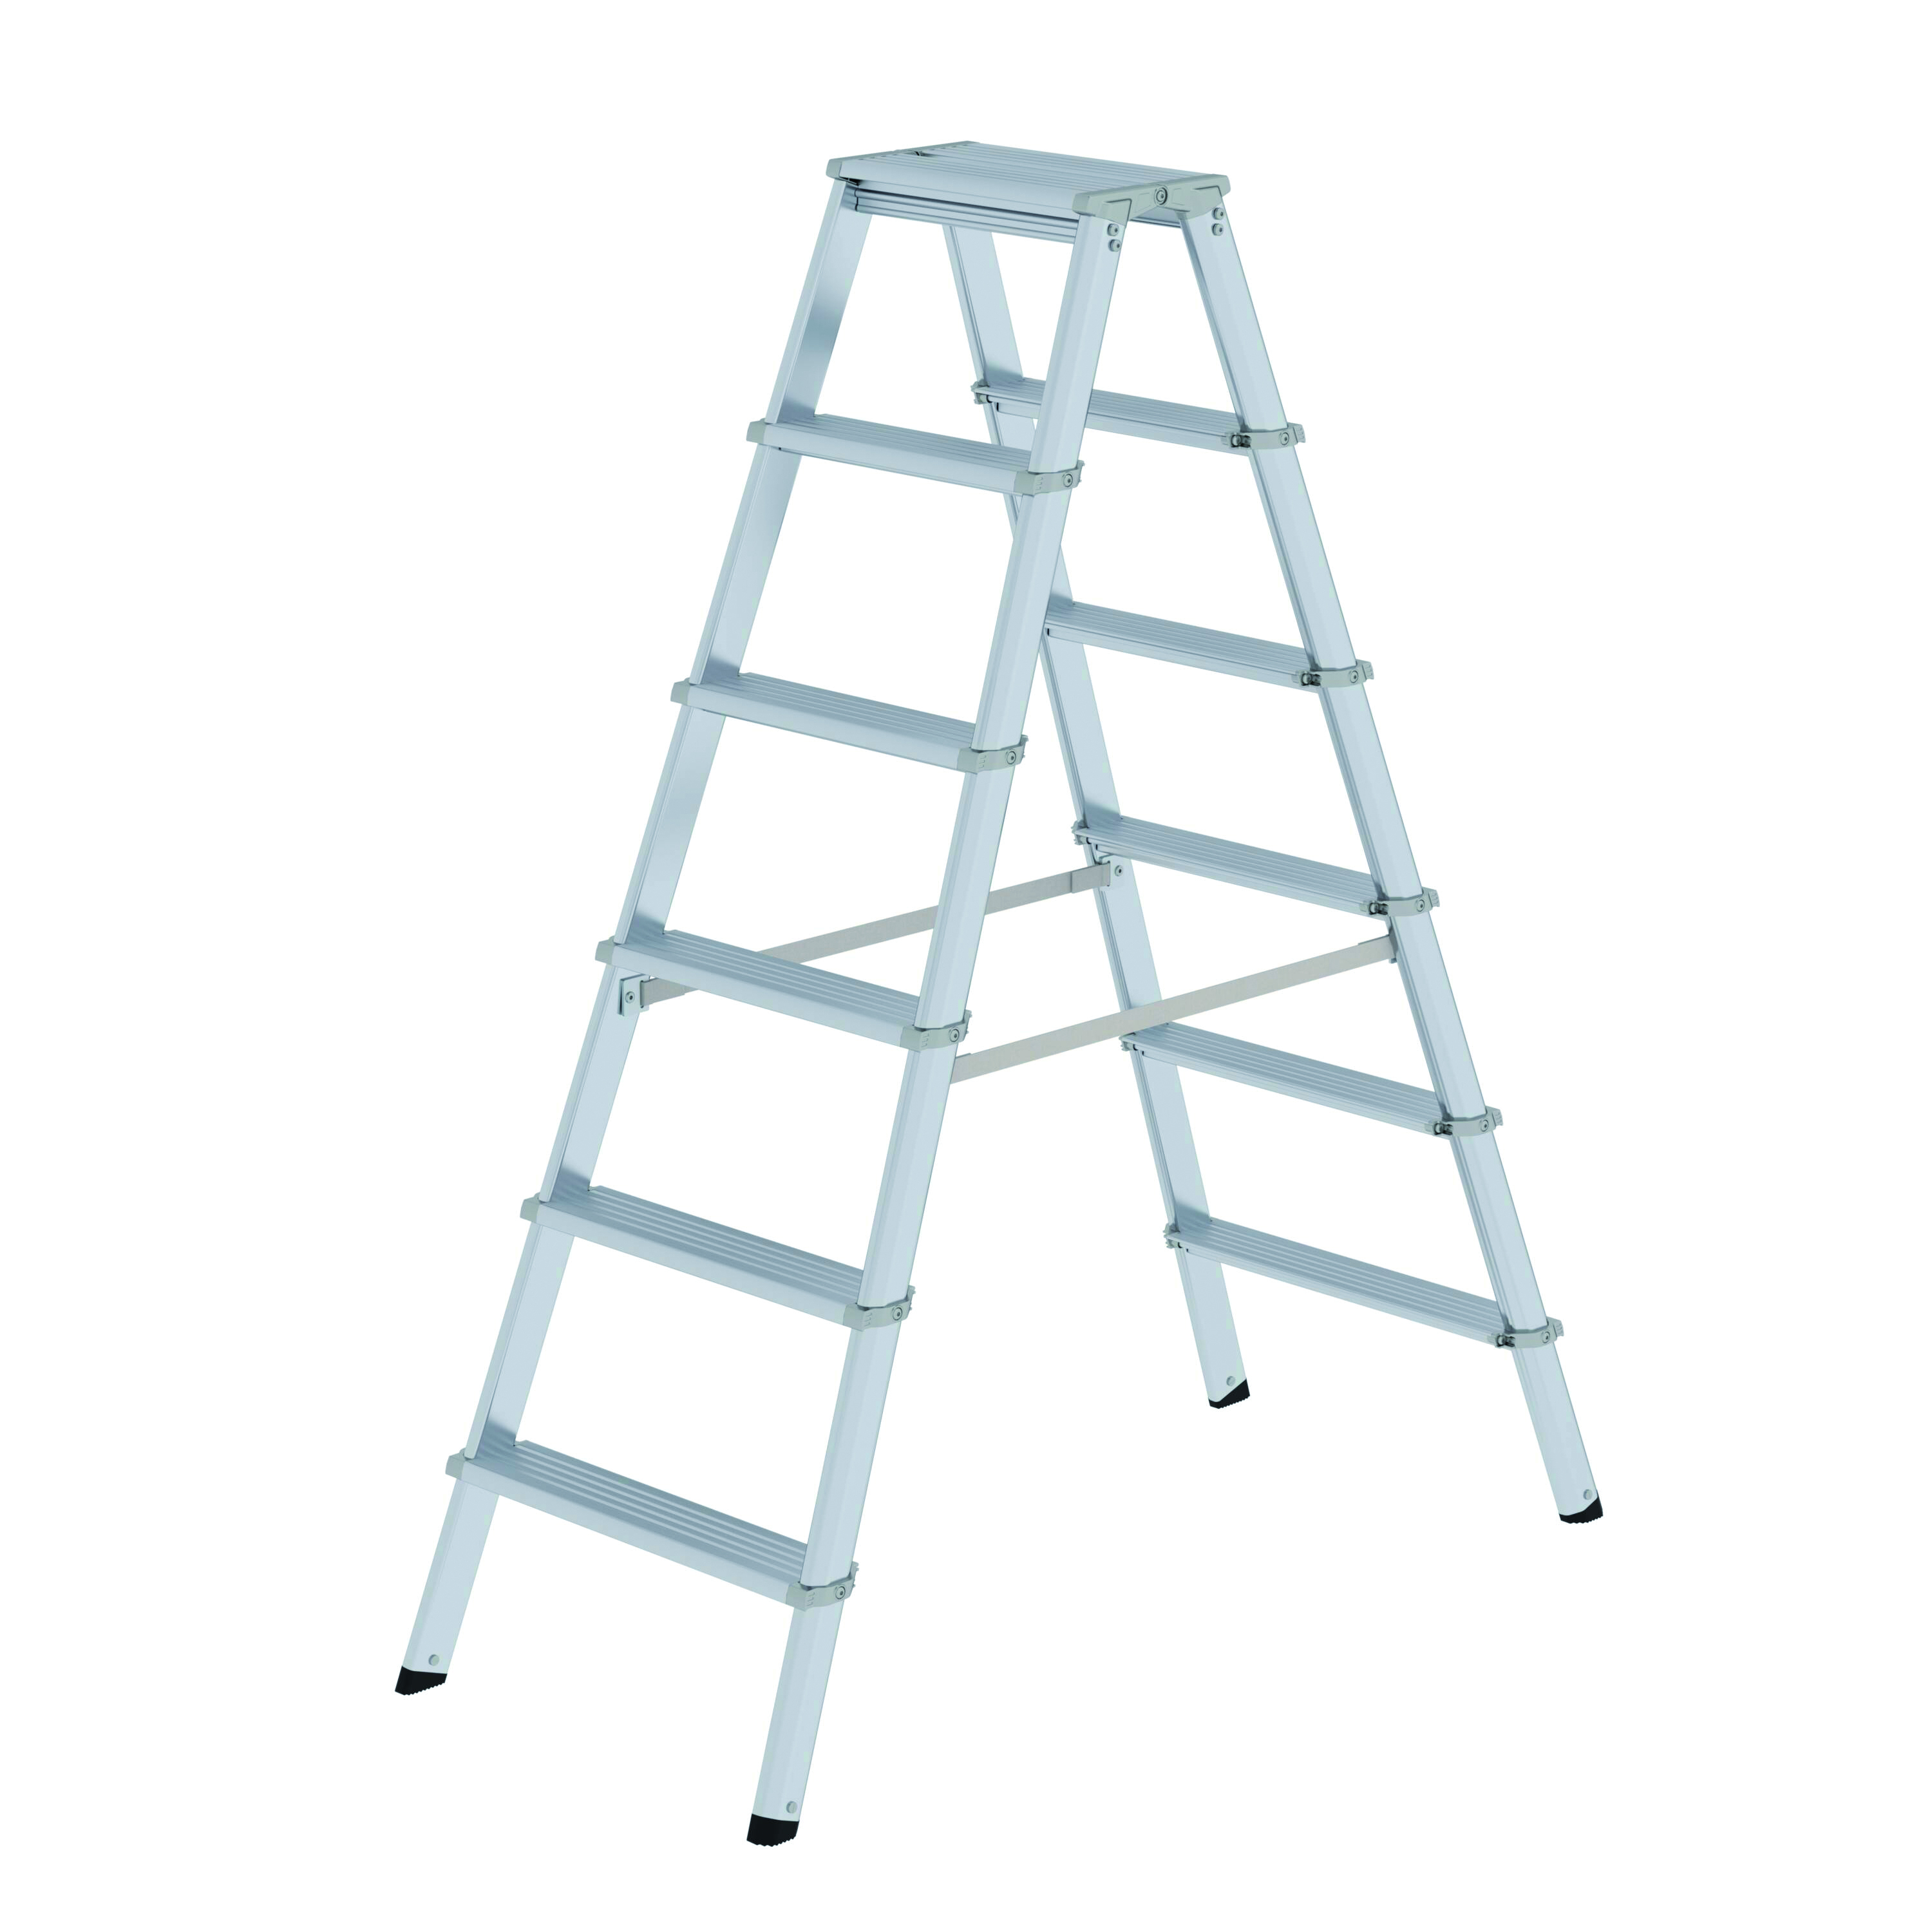 ML Stufen-Stehleiter, beidseitig begehbar - 2 x 3 Stufen